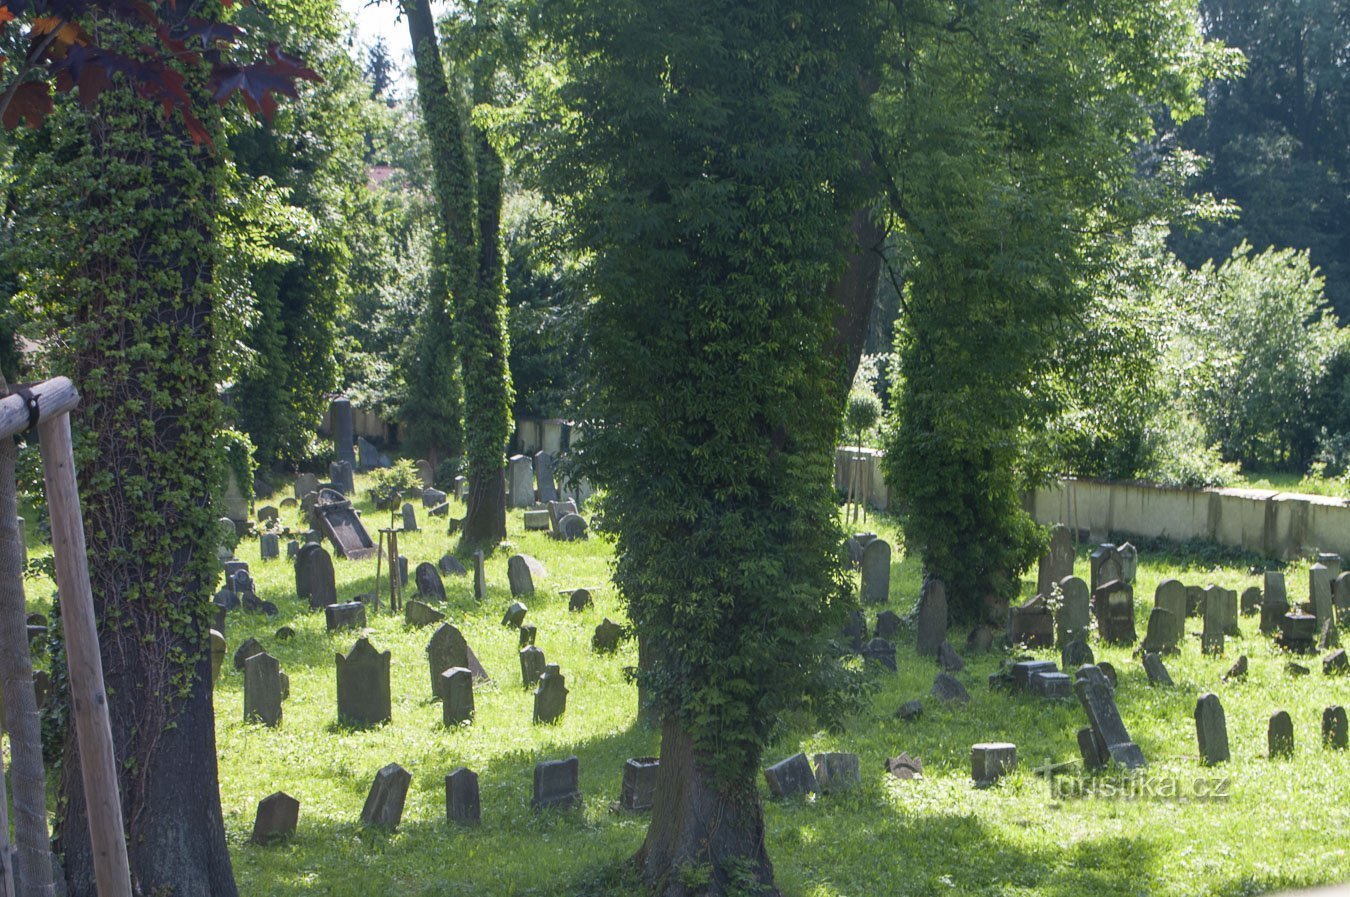 Hranice - nghĩa trang Do Thái